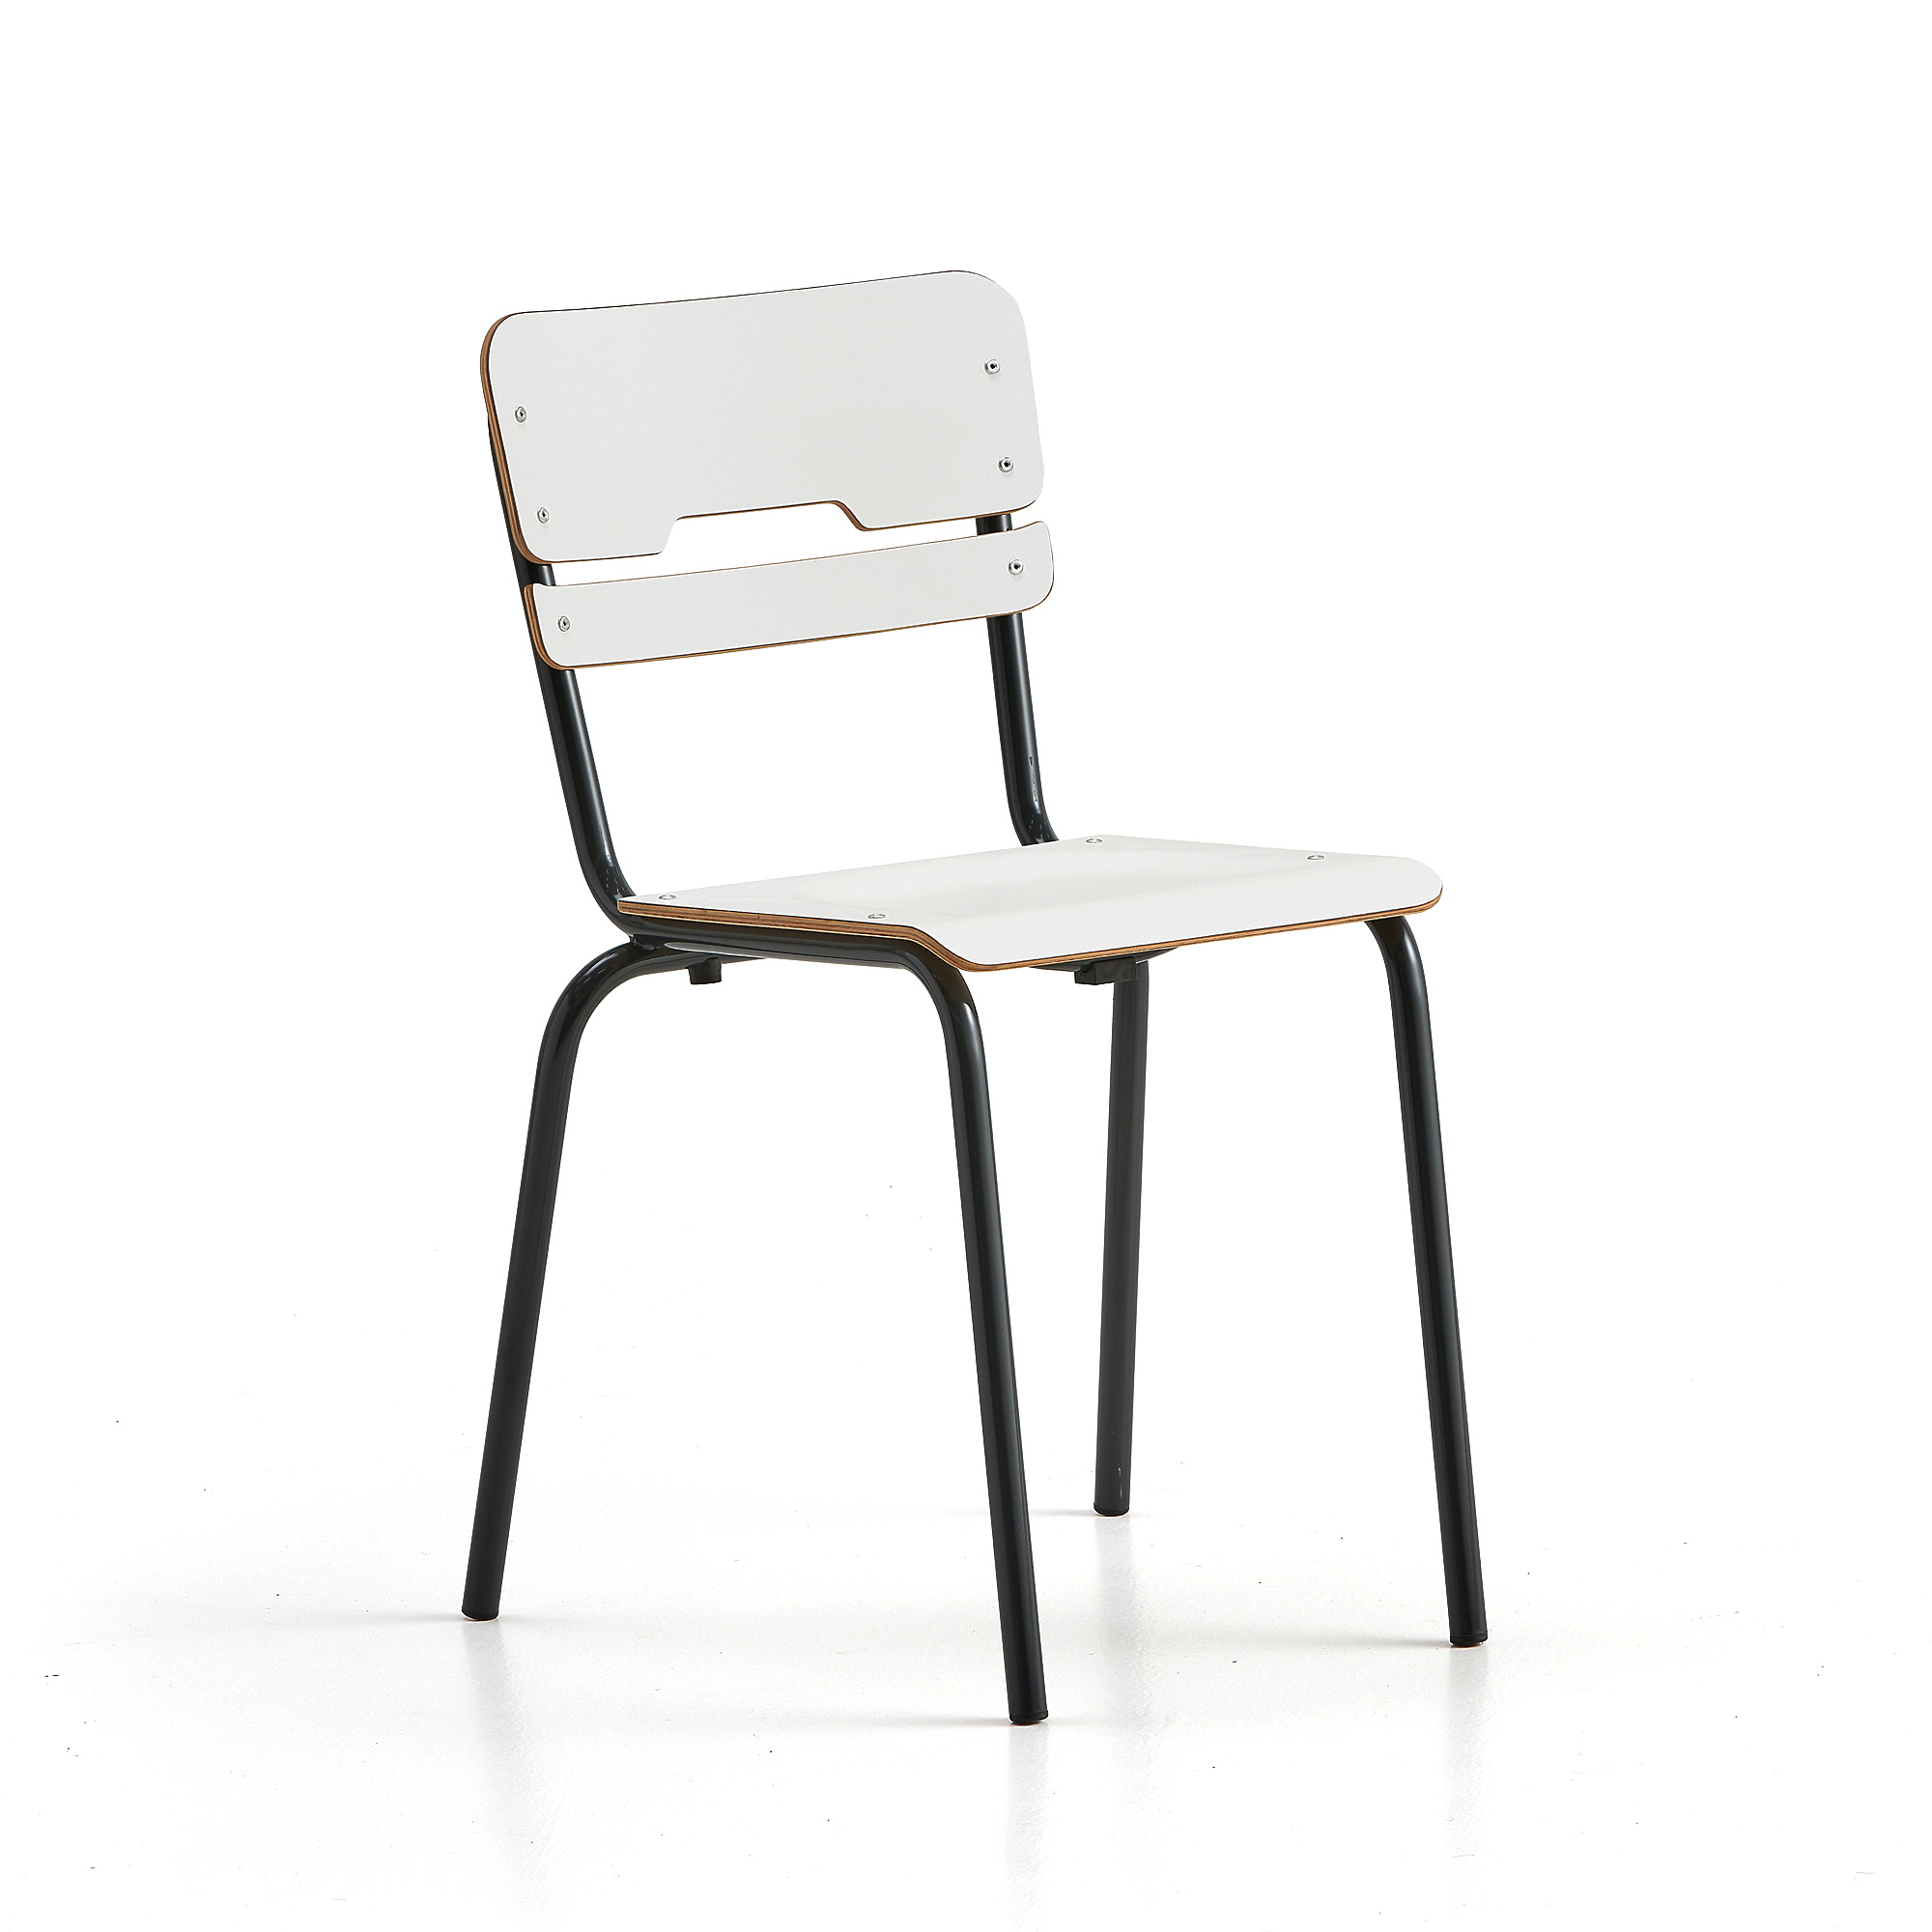 Levně Školní židle SCIENTIA, sedák 360x360 mm, výška 460 mm, antracitová/bílá